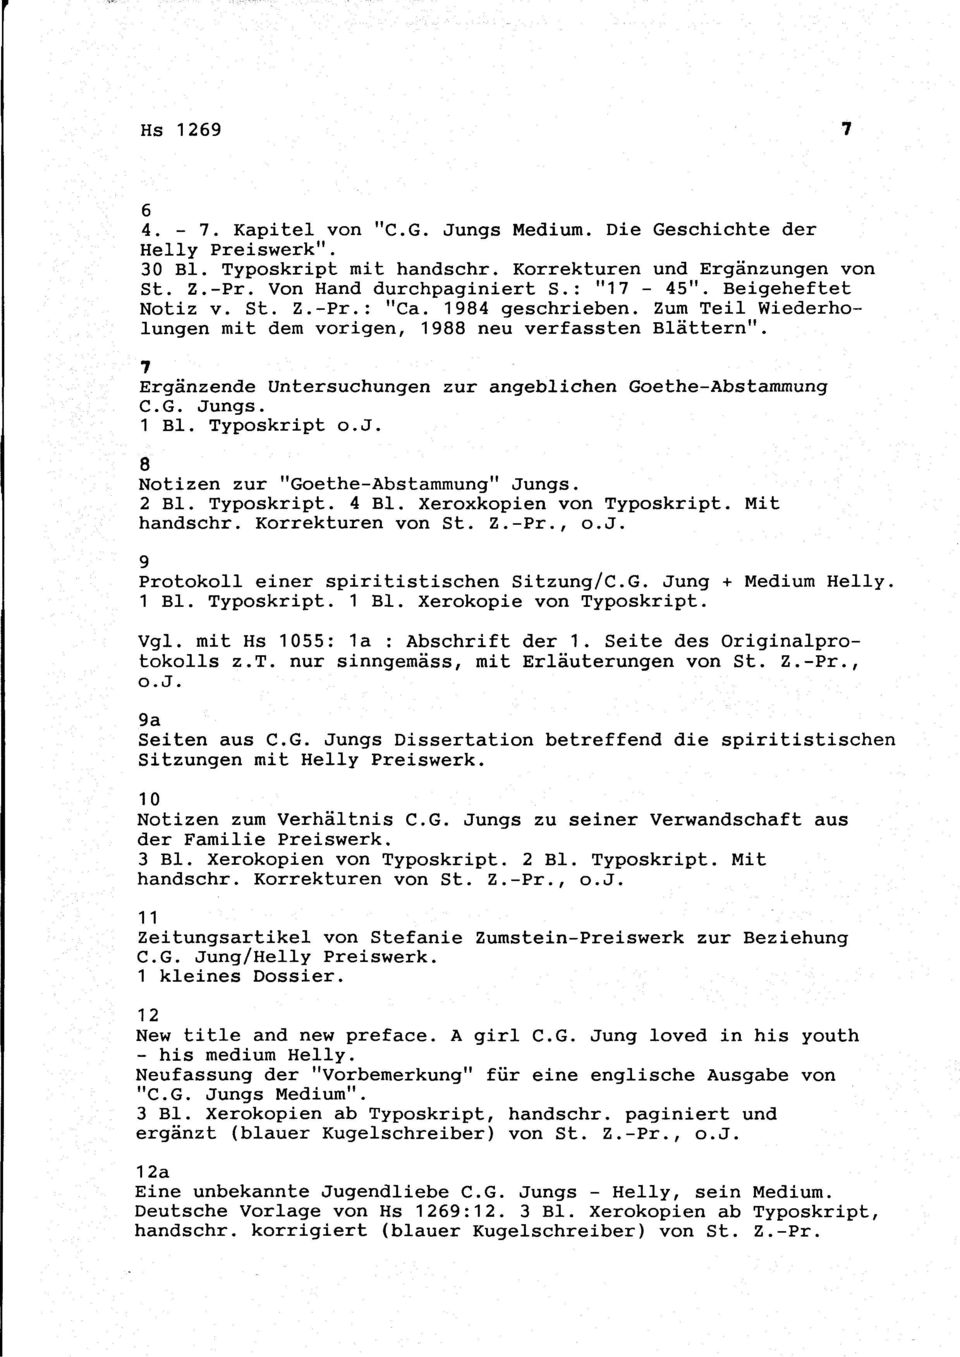 1 Bl. Typoskript o.j. 8 Notizen zur "Goethe-Abstammung" Jungs. 2 Bl. Typoskript. 4 Bl. Xeroxkopien von Typoskript. Mit hdschr. Korrekturen von St. Z.-Pr., o.j. 9 Protokoll einer spiritistischen Sitzung/C.